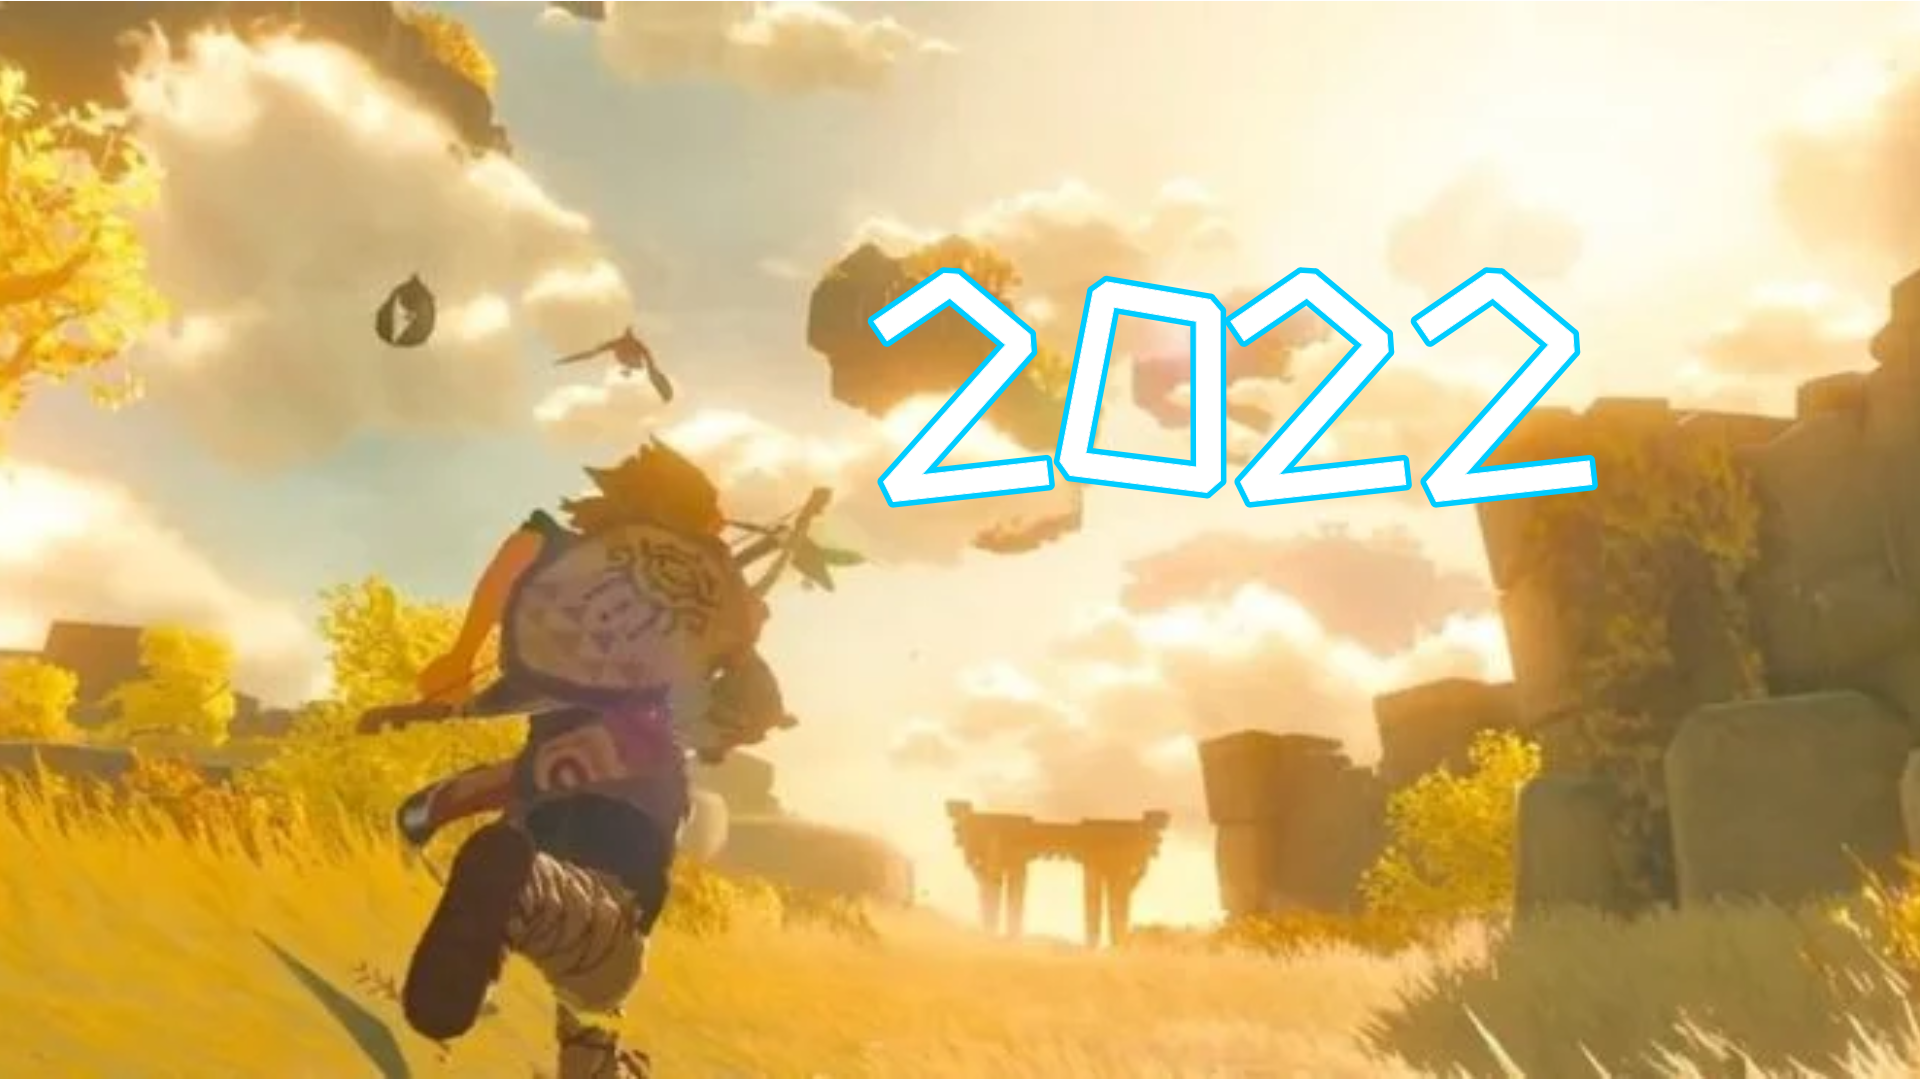 【主机游戏】2022年将是任天堂不可思议的一年 你准备好Switch主机了吗？